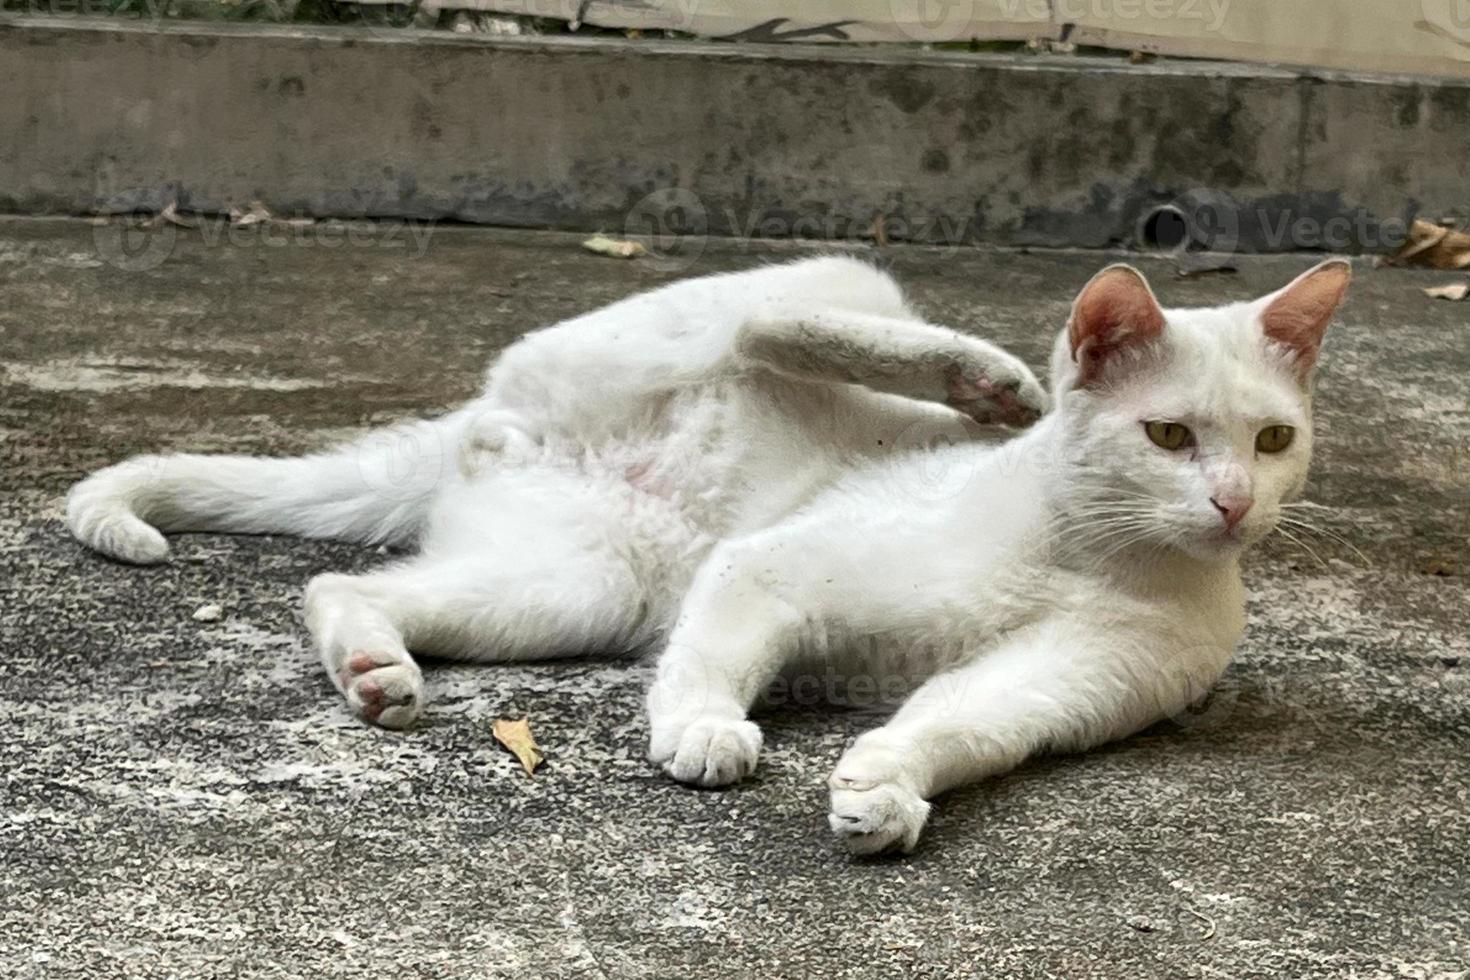 jeukend wit kat. verdwaald kat aan het liegen naar beneden en oor krabben. foto